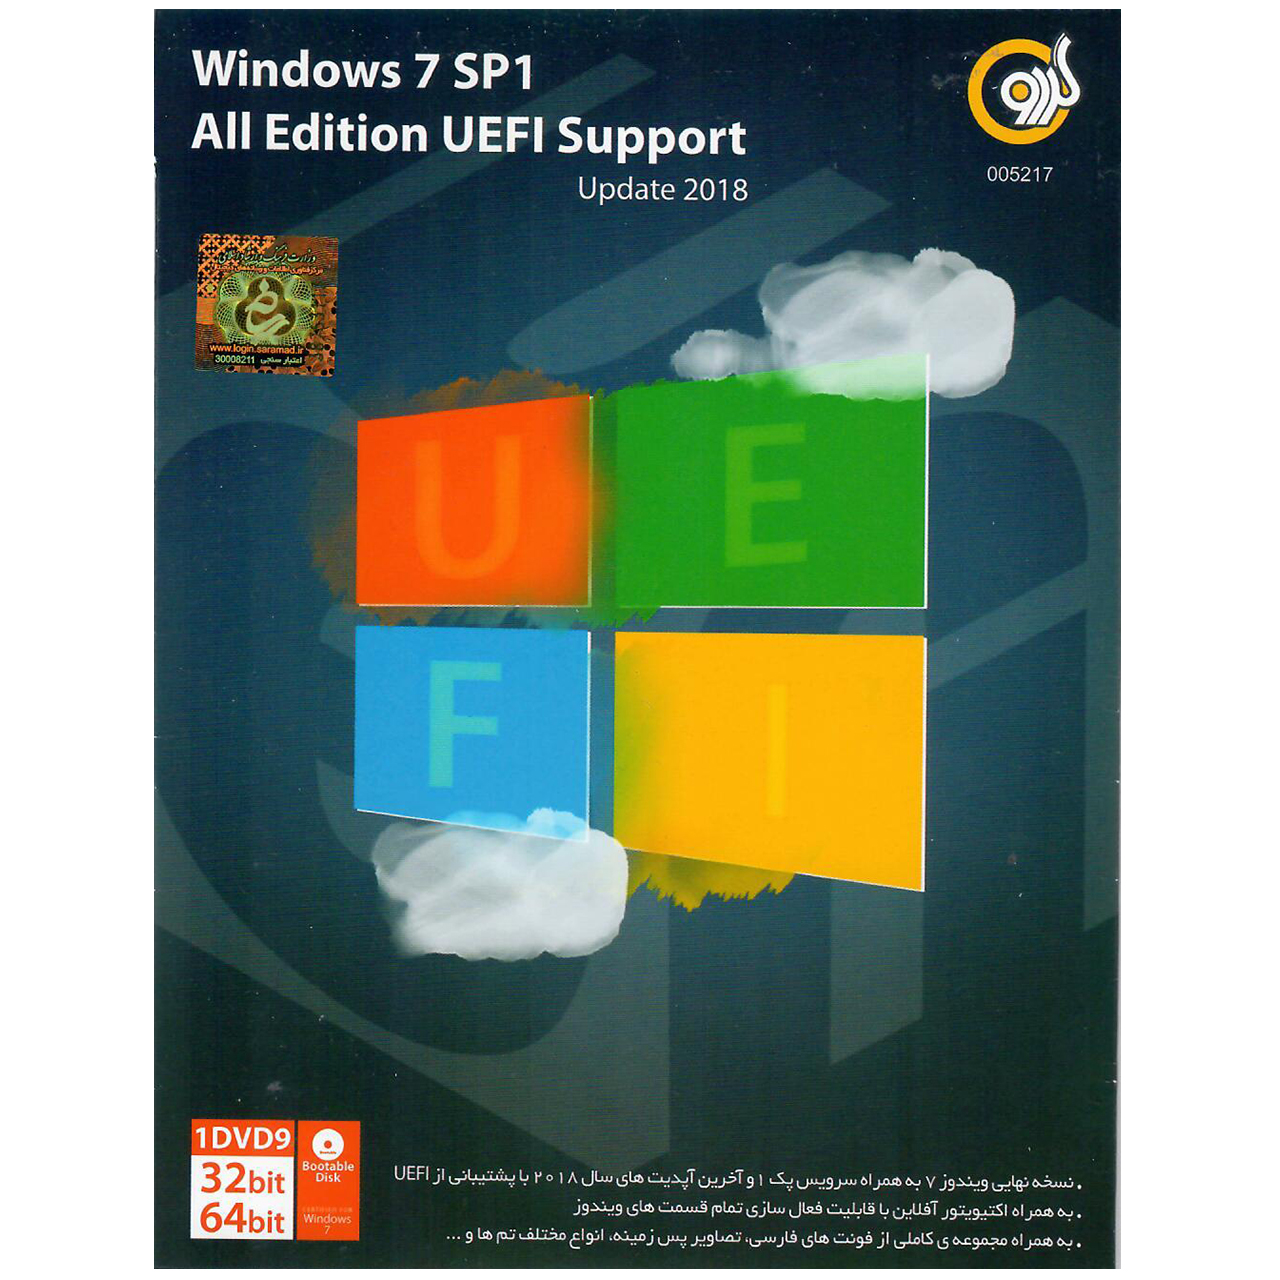 سیستم عامل windows 7 SP1 All Edition UEFI Support Update 2018 نشر گردو